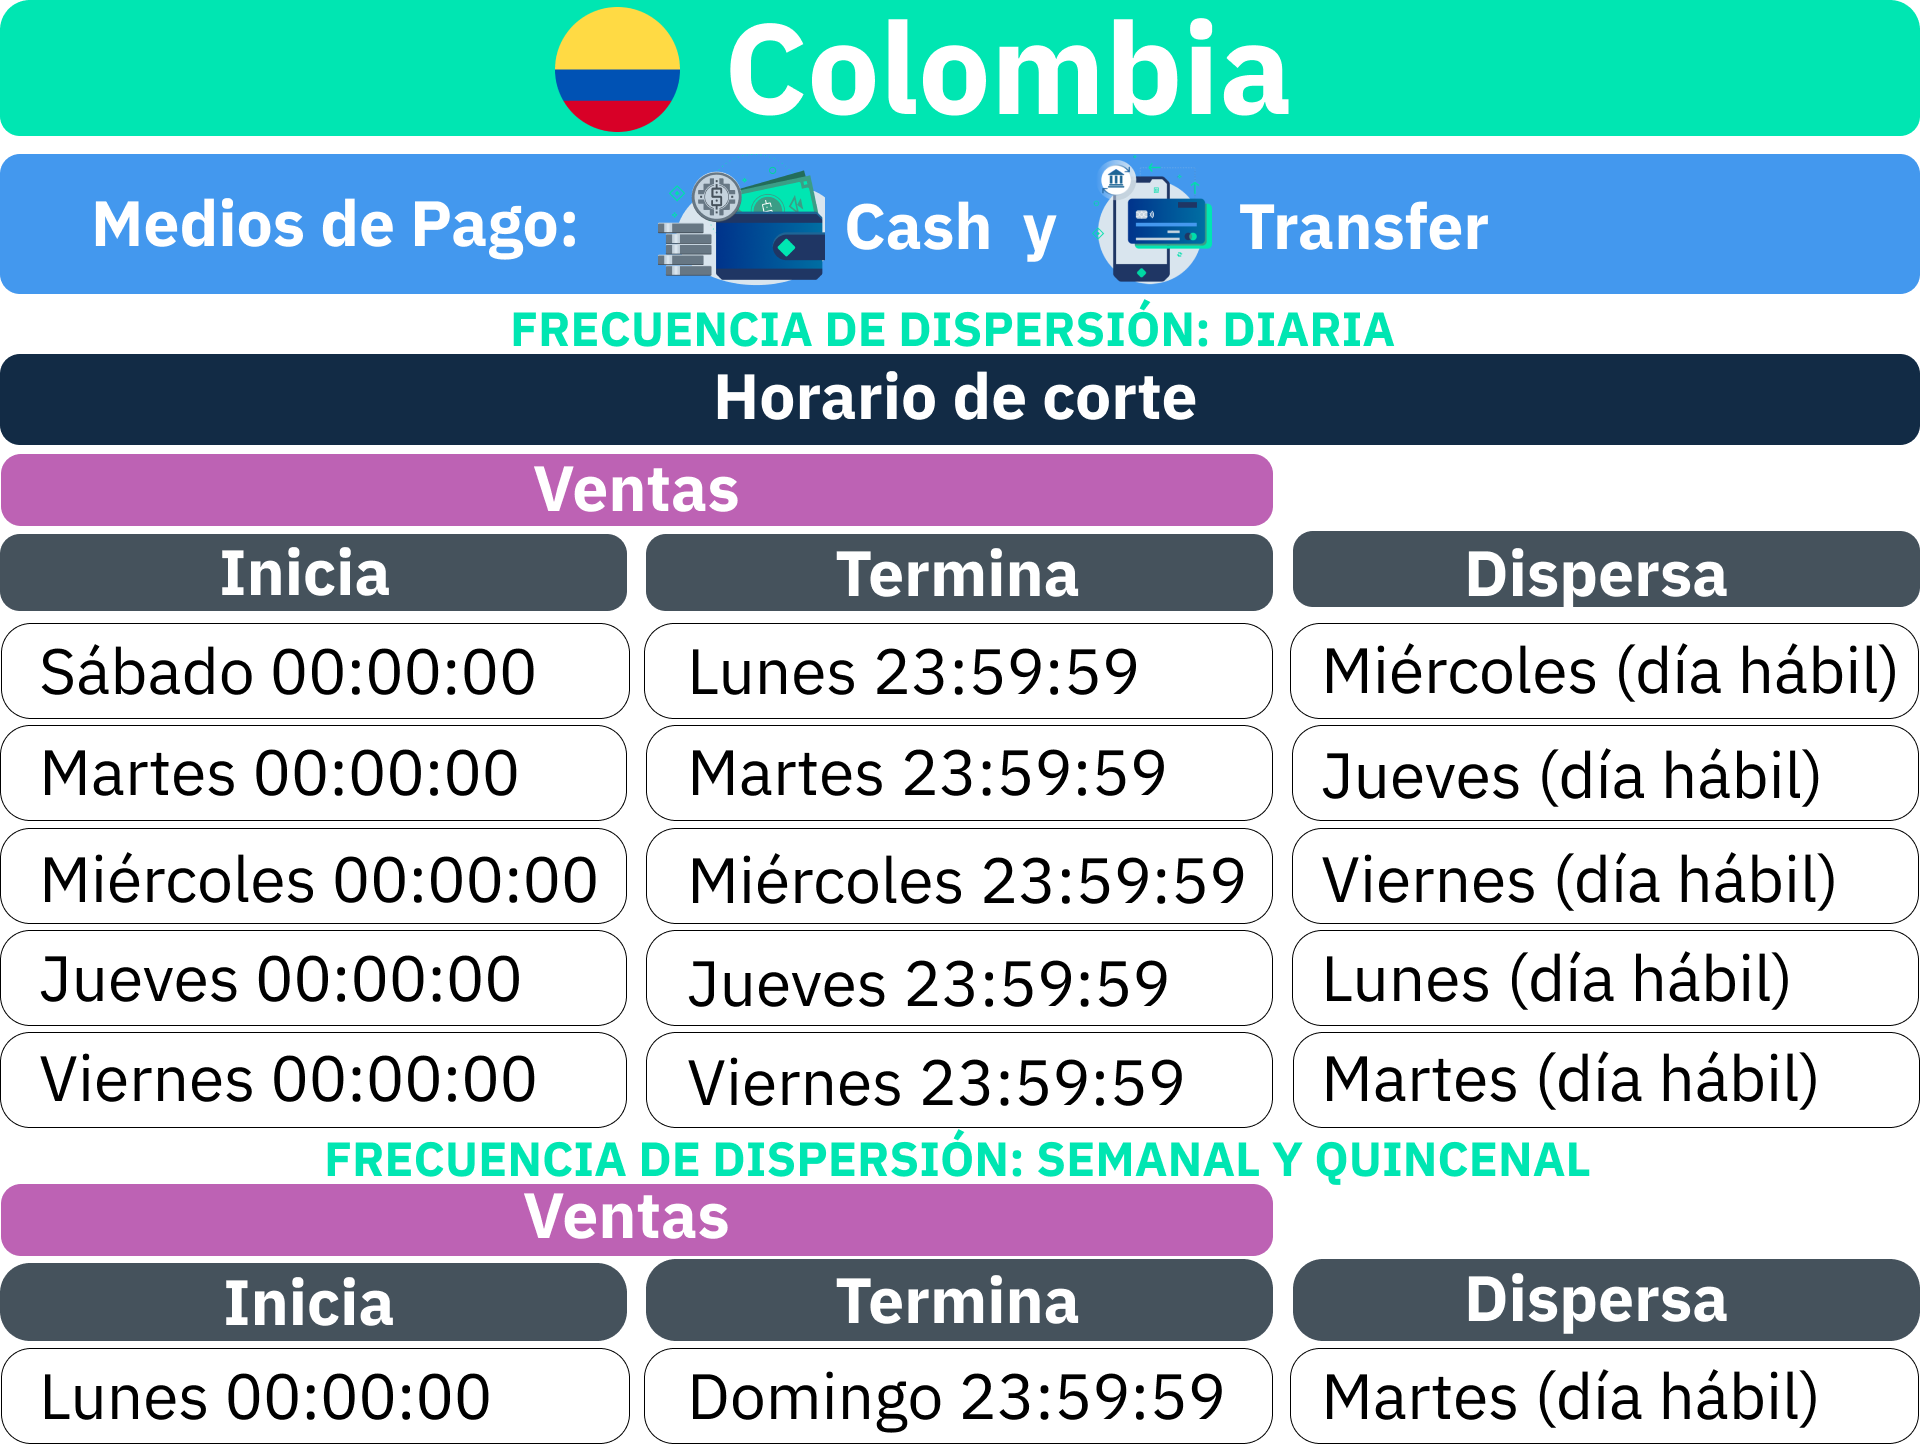 Proceso_de_liquidaci_n_Colombia_-_Cash_y_Transfer.png